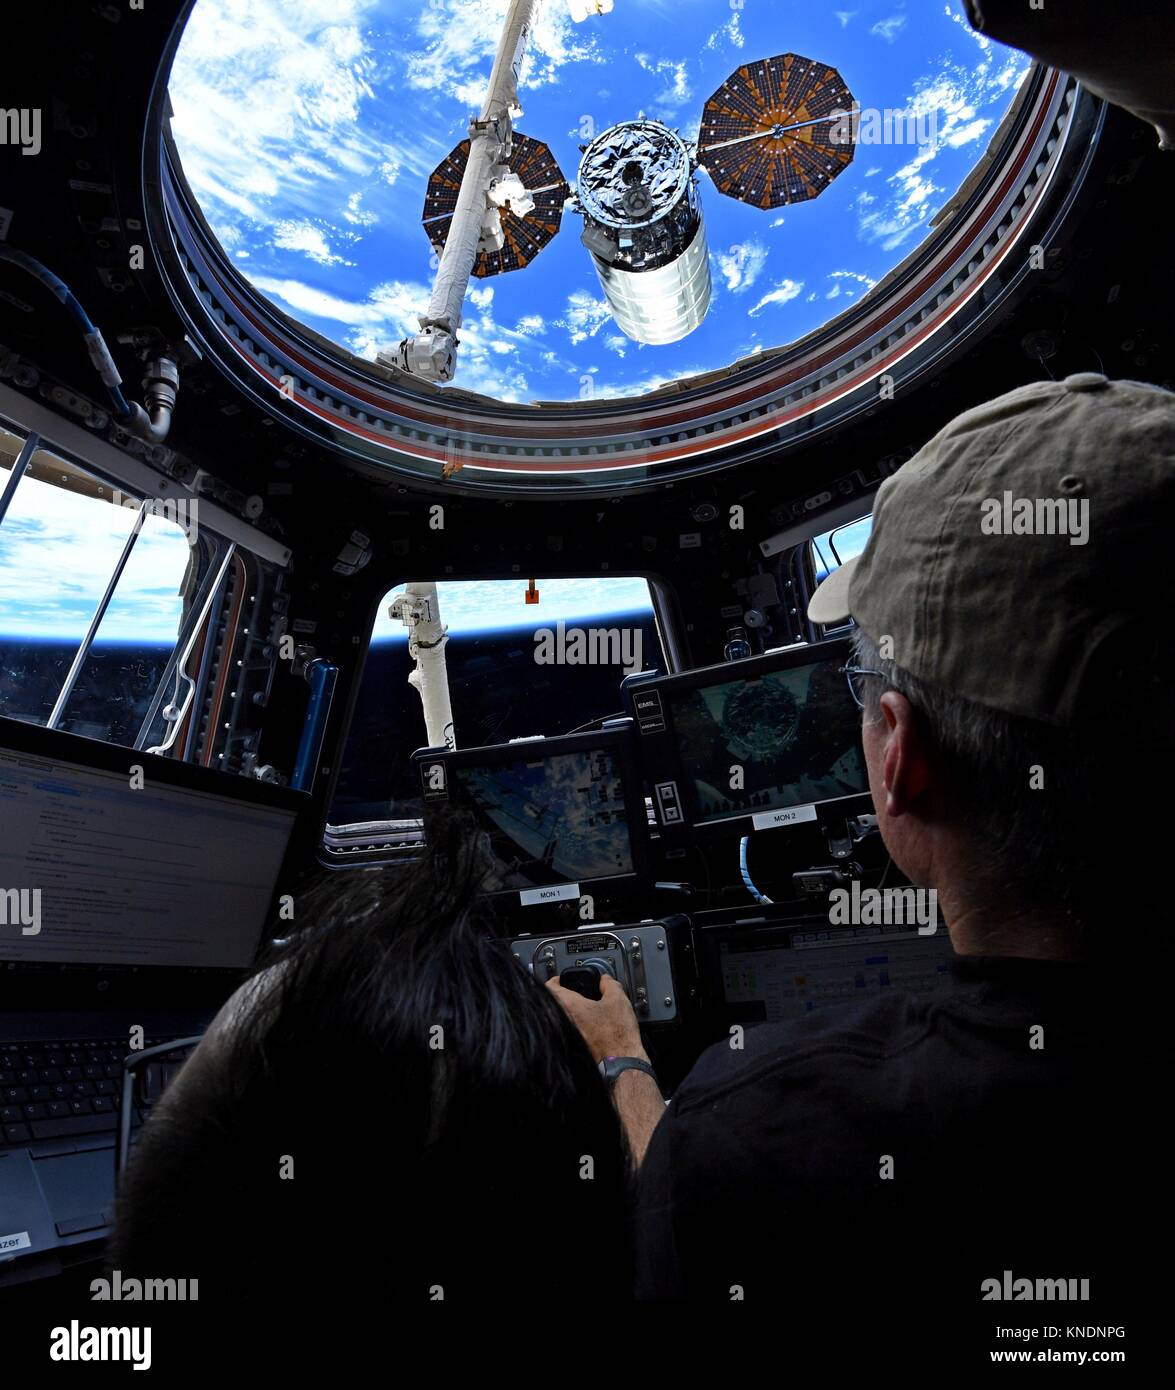 Expedition 53 astronauta americano Mark Vande Hei presso i comandi della robotica Canada braccio 2 prima del rilascio dell'orbitale ATK Cygnus vano di carico dal veicolo spaziale la Stazione Spaziale Internazionale il 6 dicembre 2017 in orbita intorno alla terra. Cygnus verrà distribuito 14 CubeSats dal NanoRacks deployer e sarà successivamente bruciato sul rientro distruttivo nell'atmosfera terrestre. Foto Stock